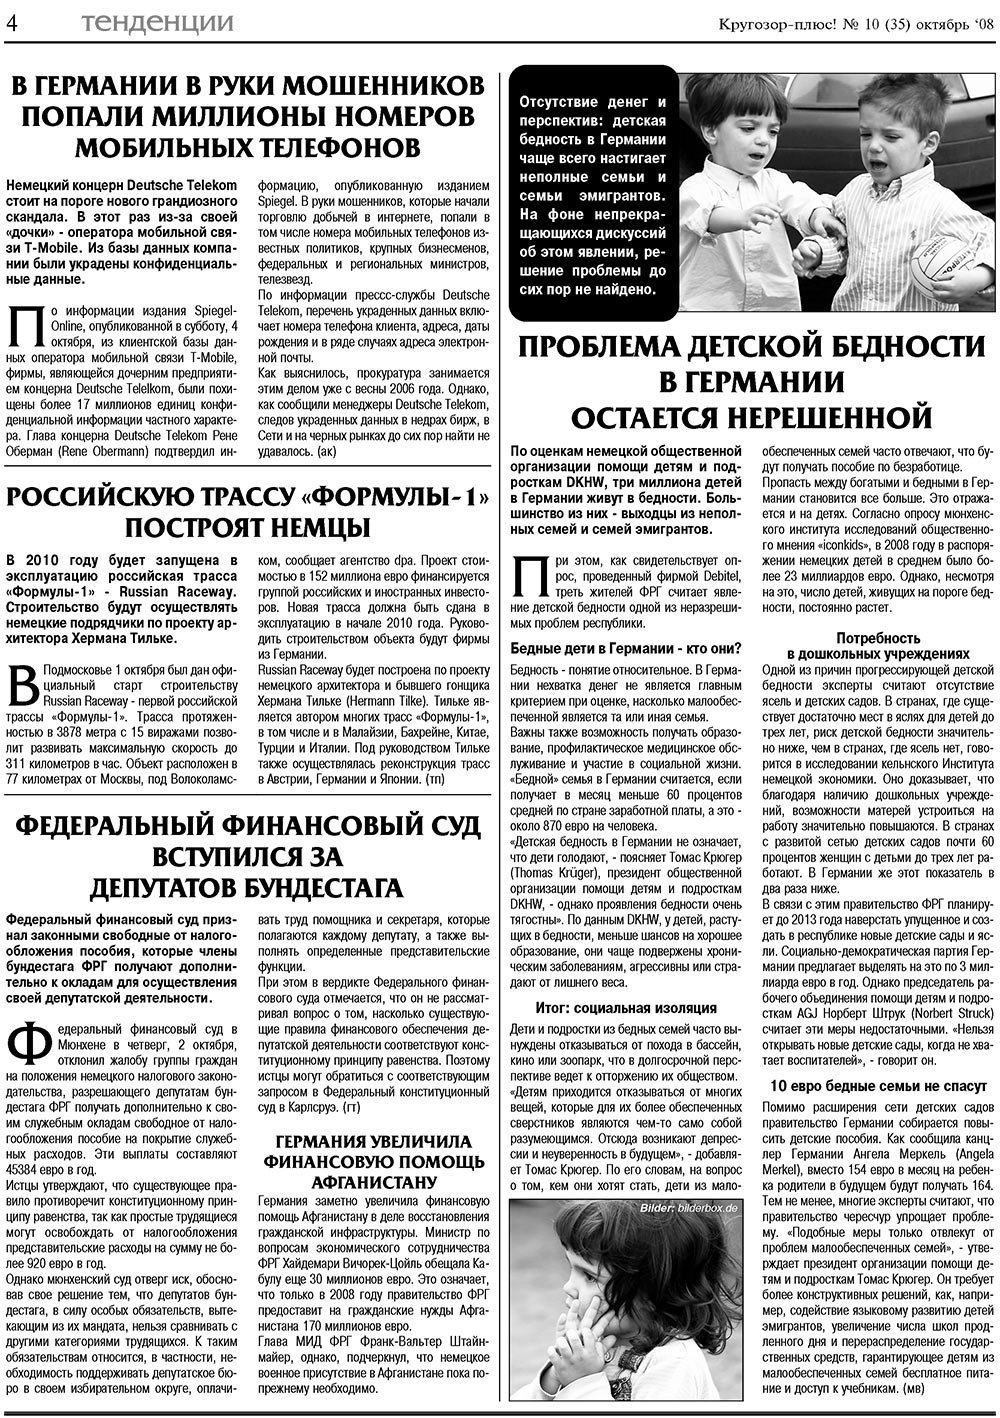 Кругозор плюс!, газета. 2008 №10 стр.4